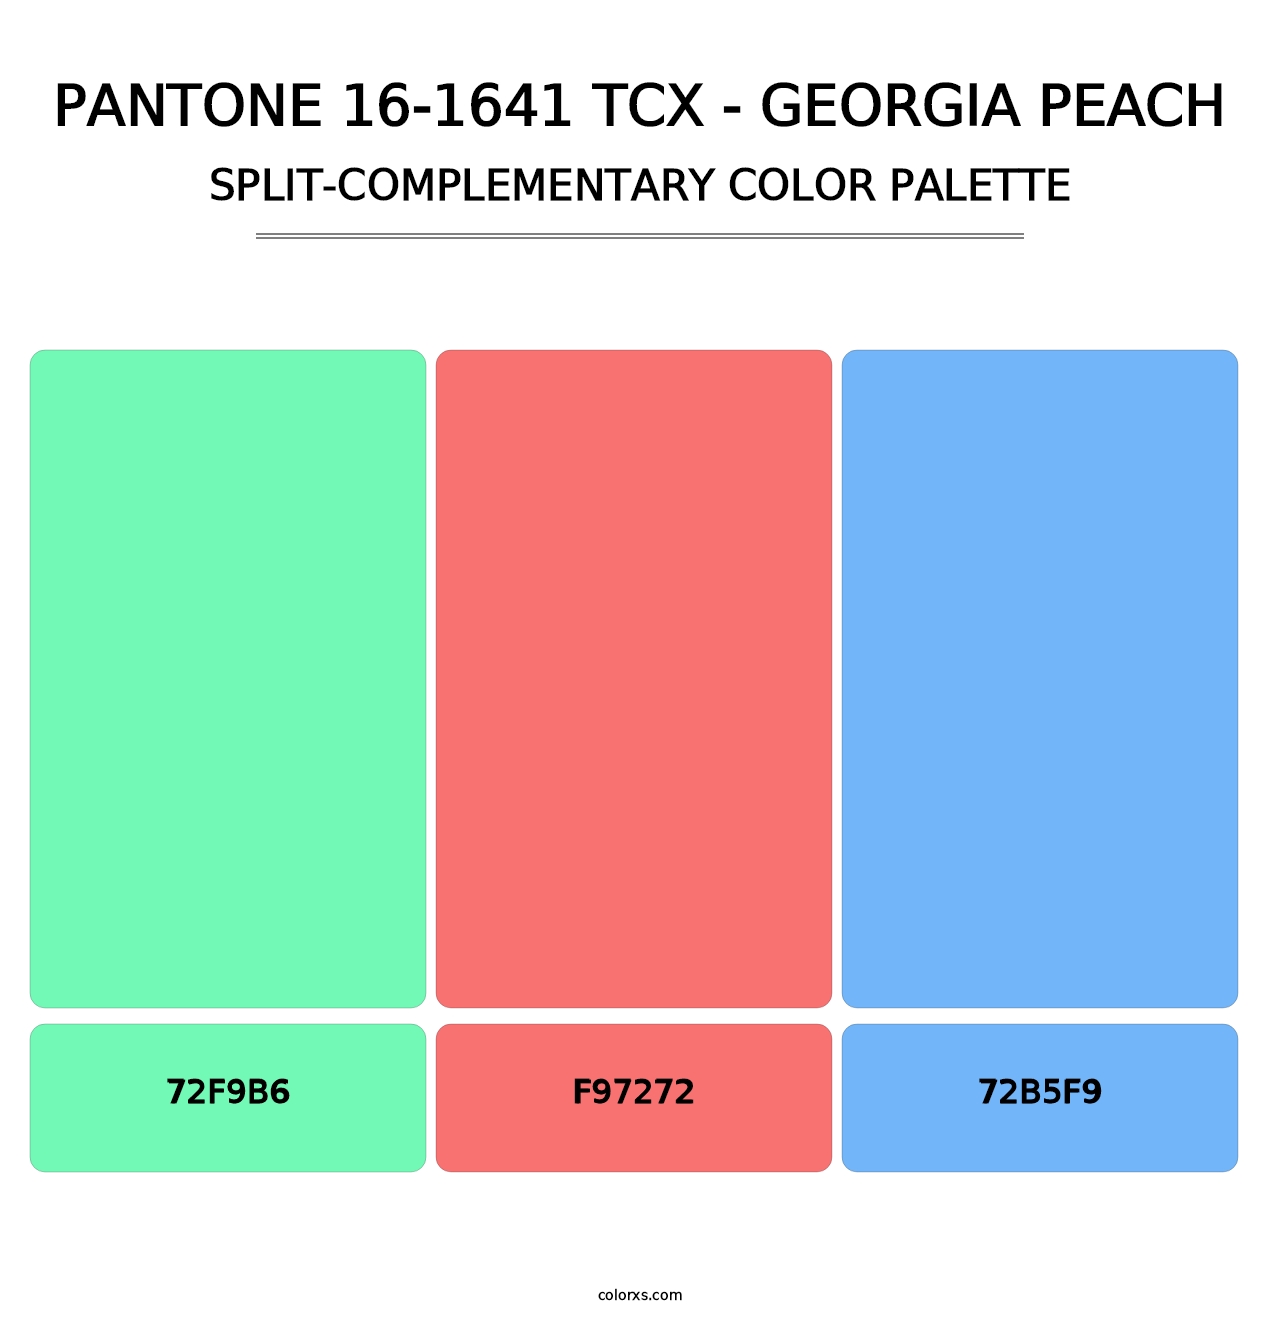 PANTONE 16-1641 TCX - Georgia Peach - Split-Complementary Color Palette